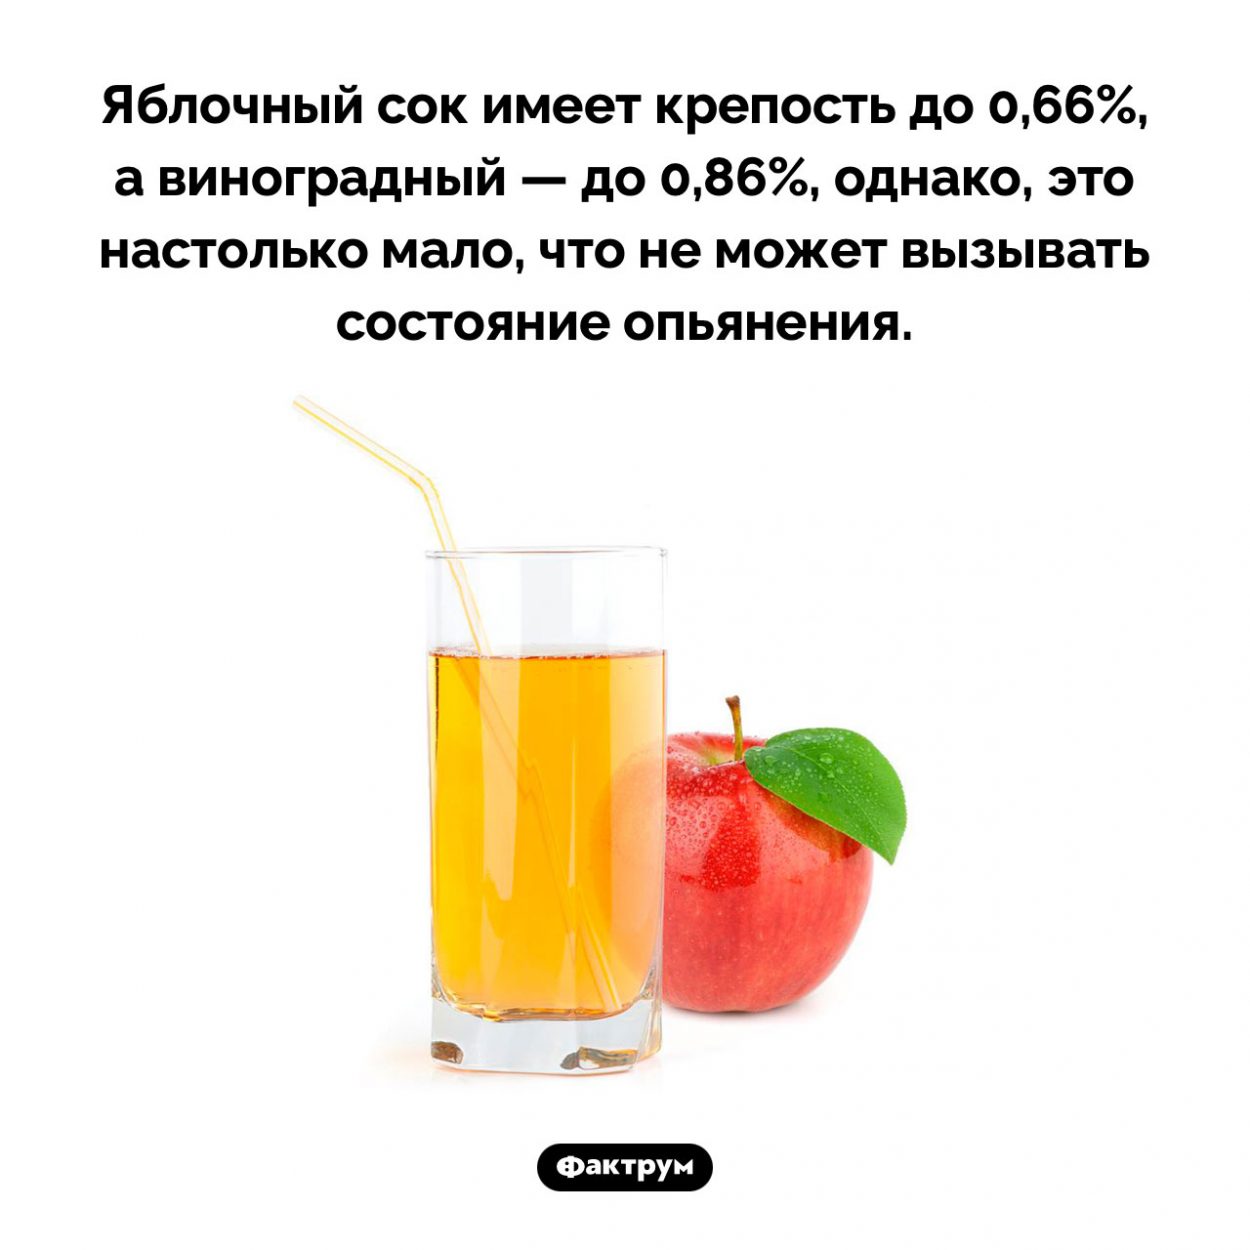 Сколько алкоголя содержится в соках. Яблочный сок имеет крепость до 0,66%, а виноградный — до 0,86%, однако, это настолько мало, что не может вызывать состояние опьянения.